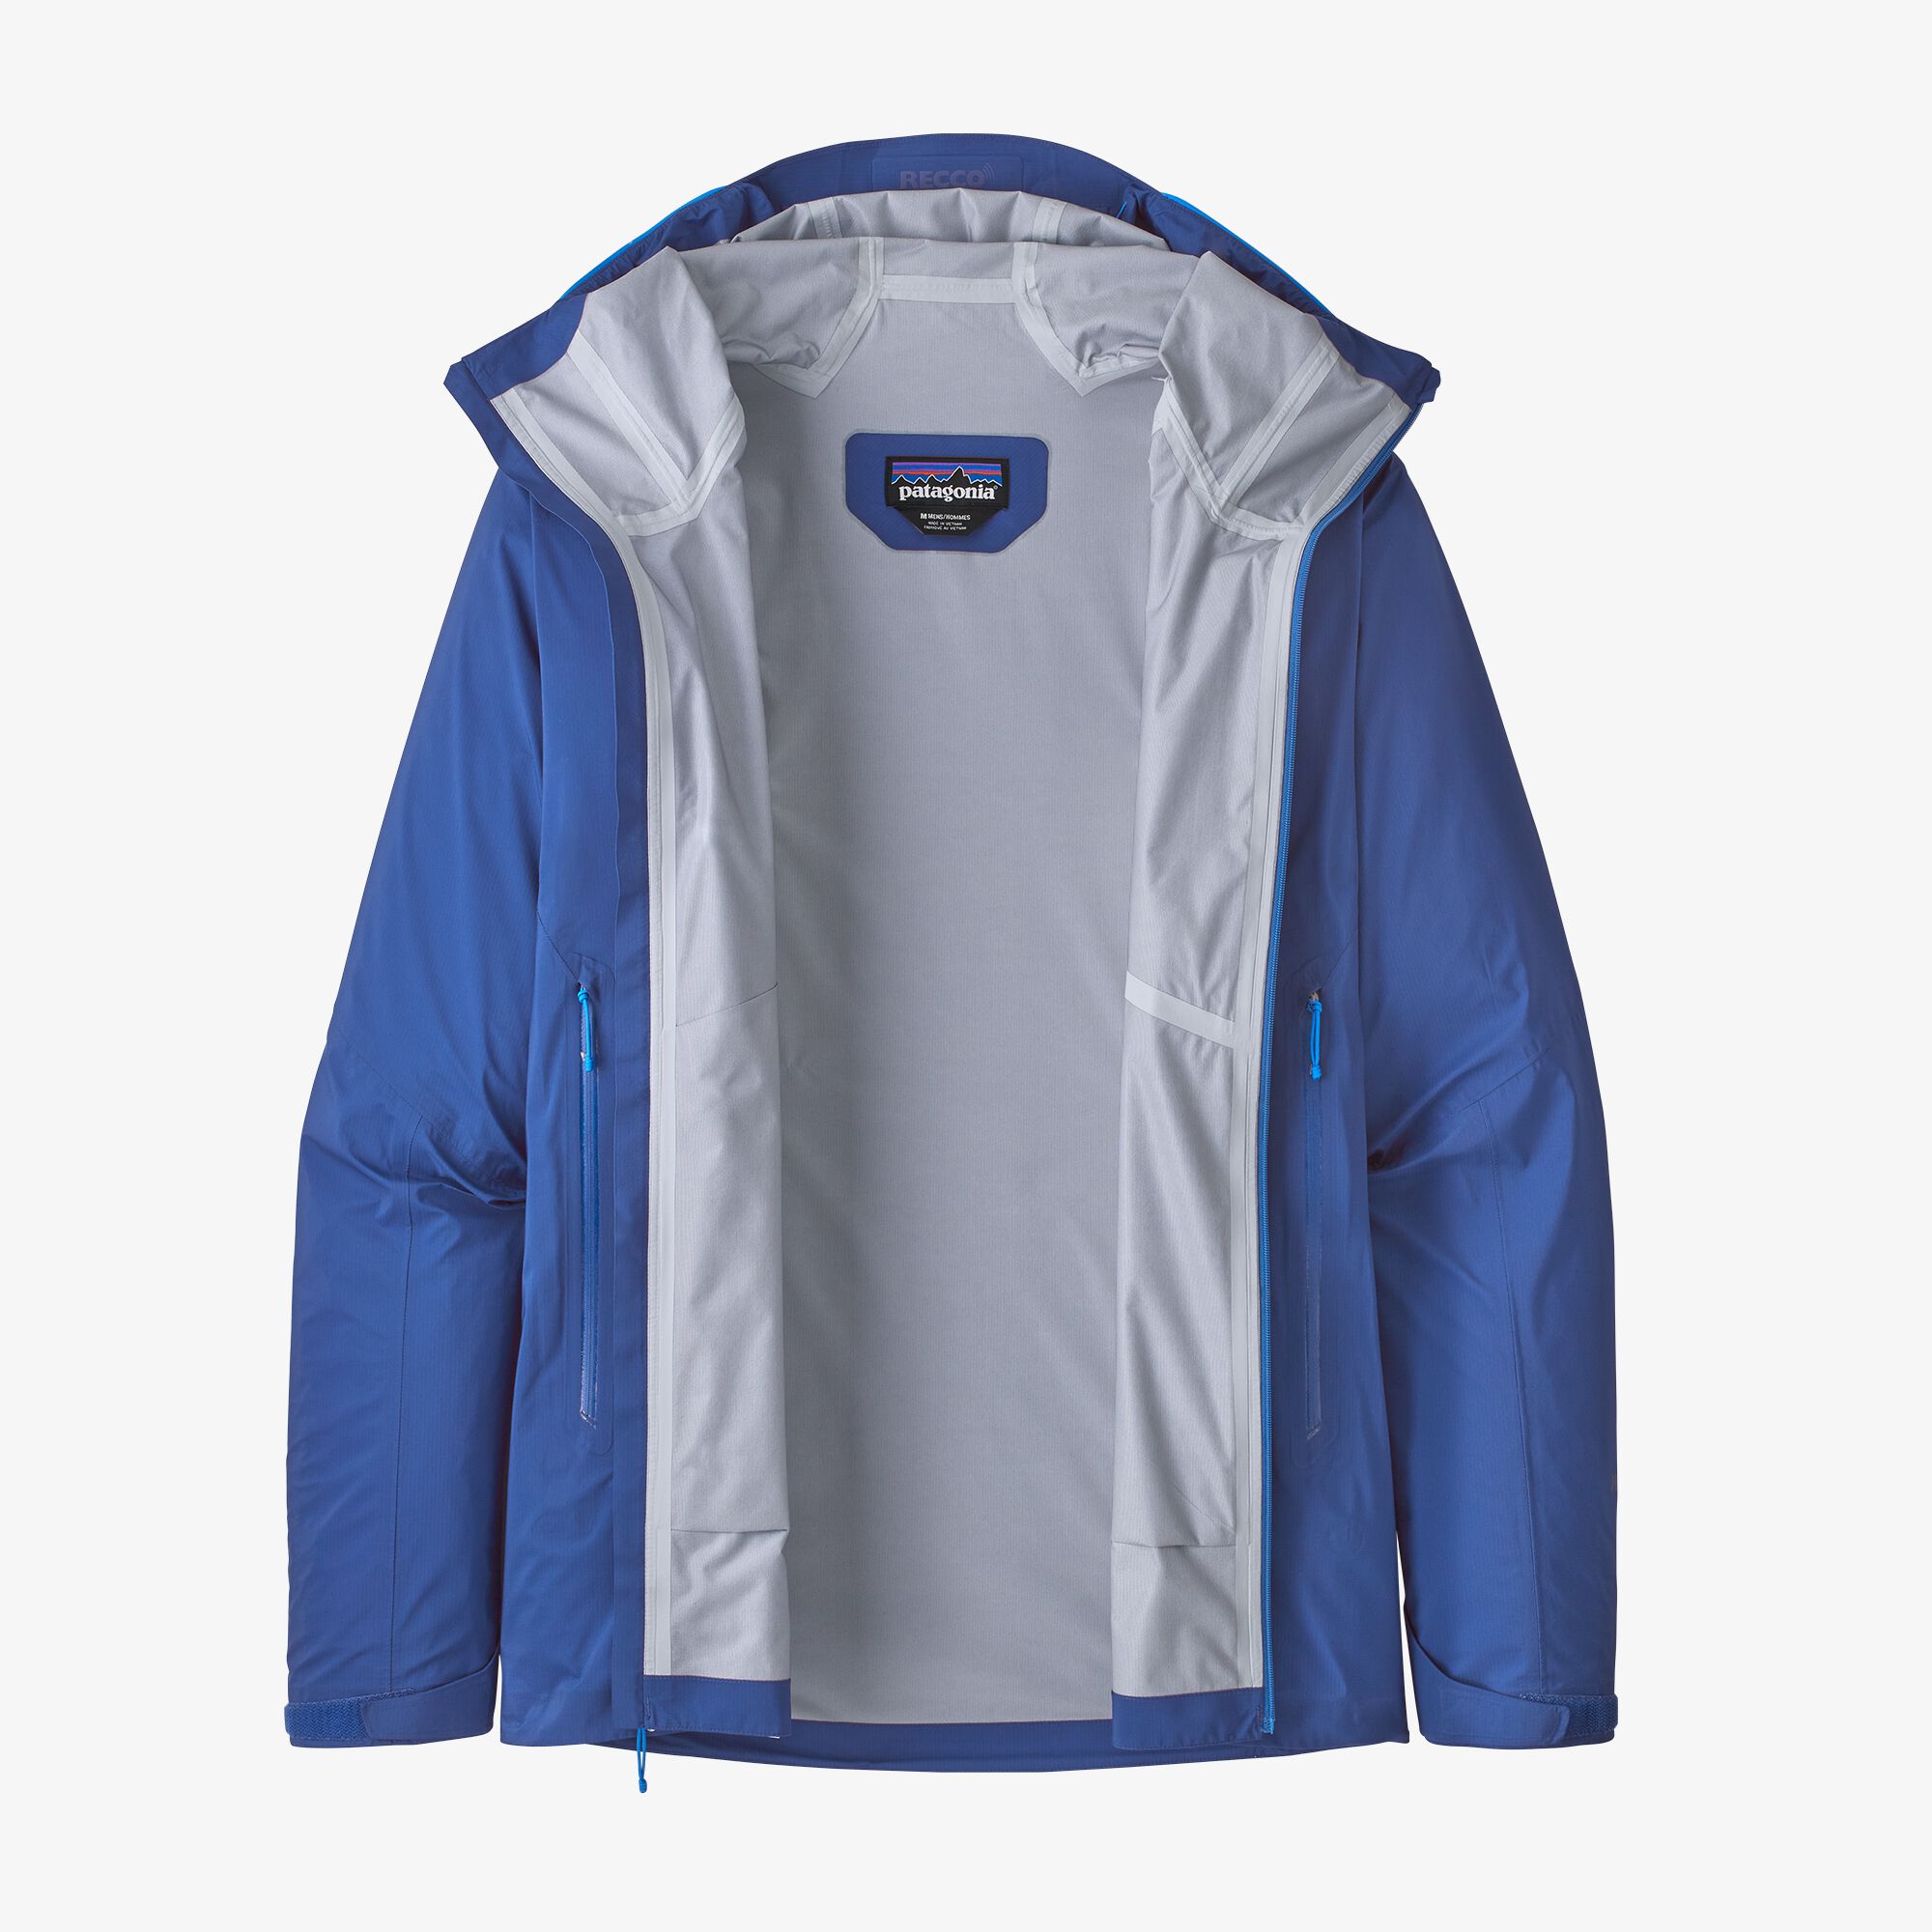 Patagonia Men's Storm10 Alpine Jacket